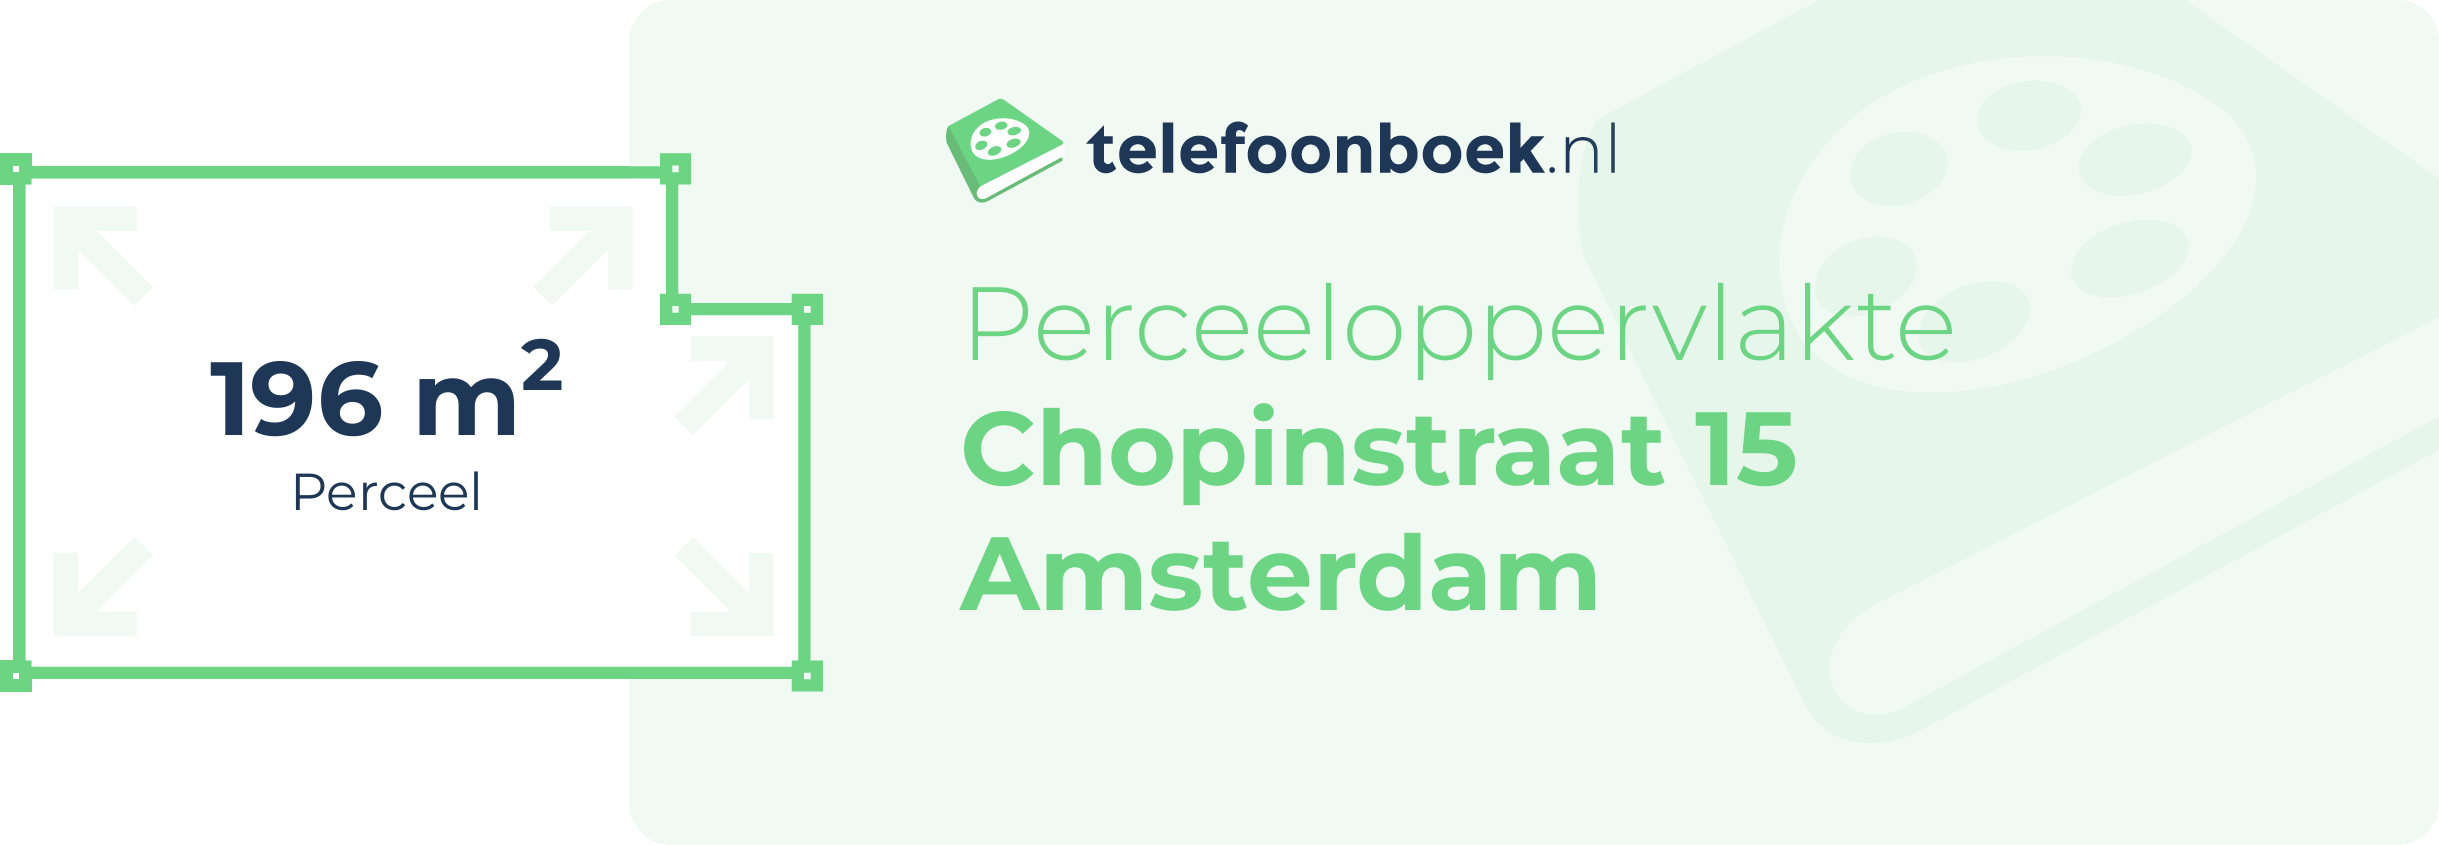 Perceeloppervlakte Chopinstraat 15 Amsterdam